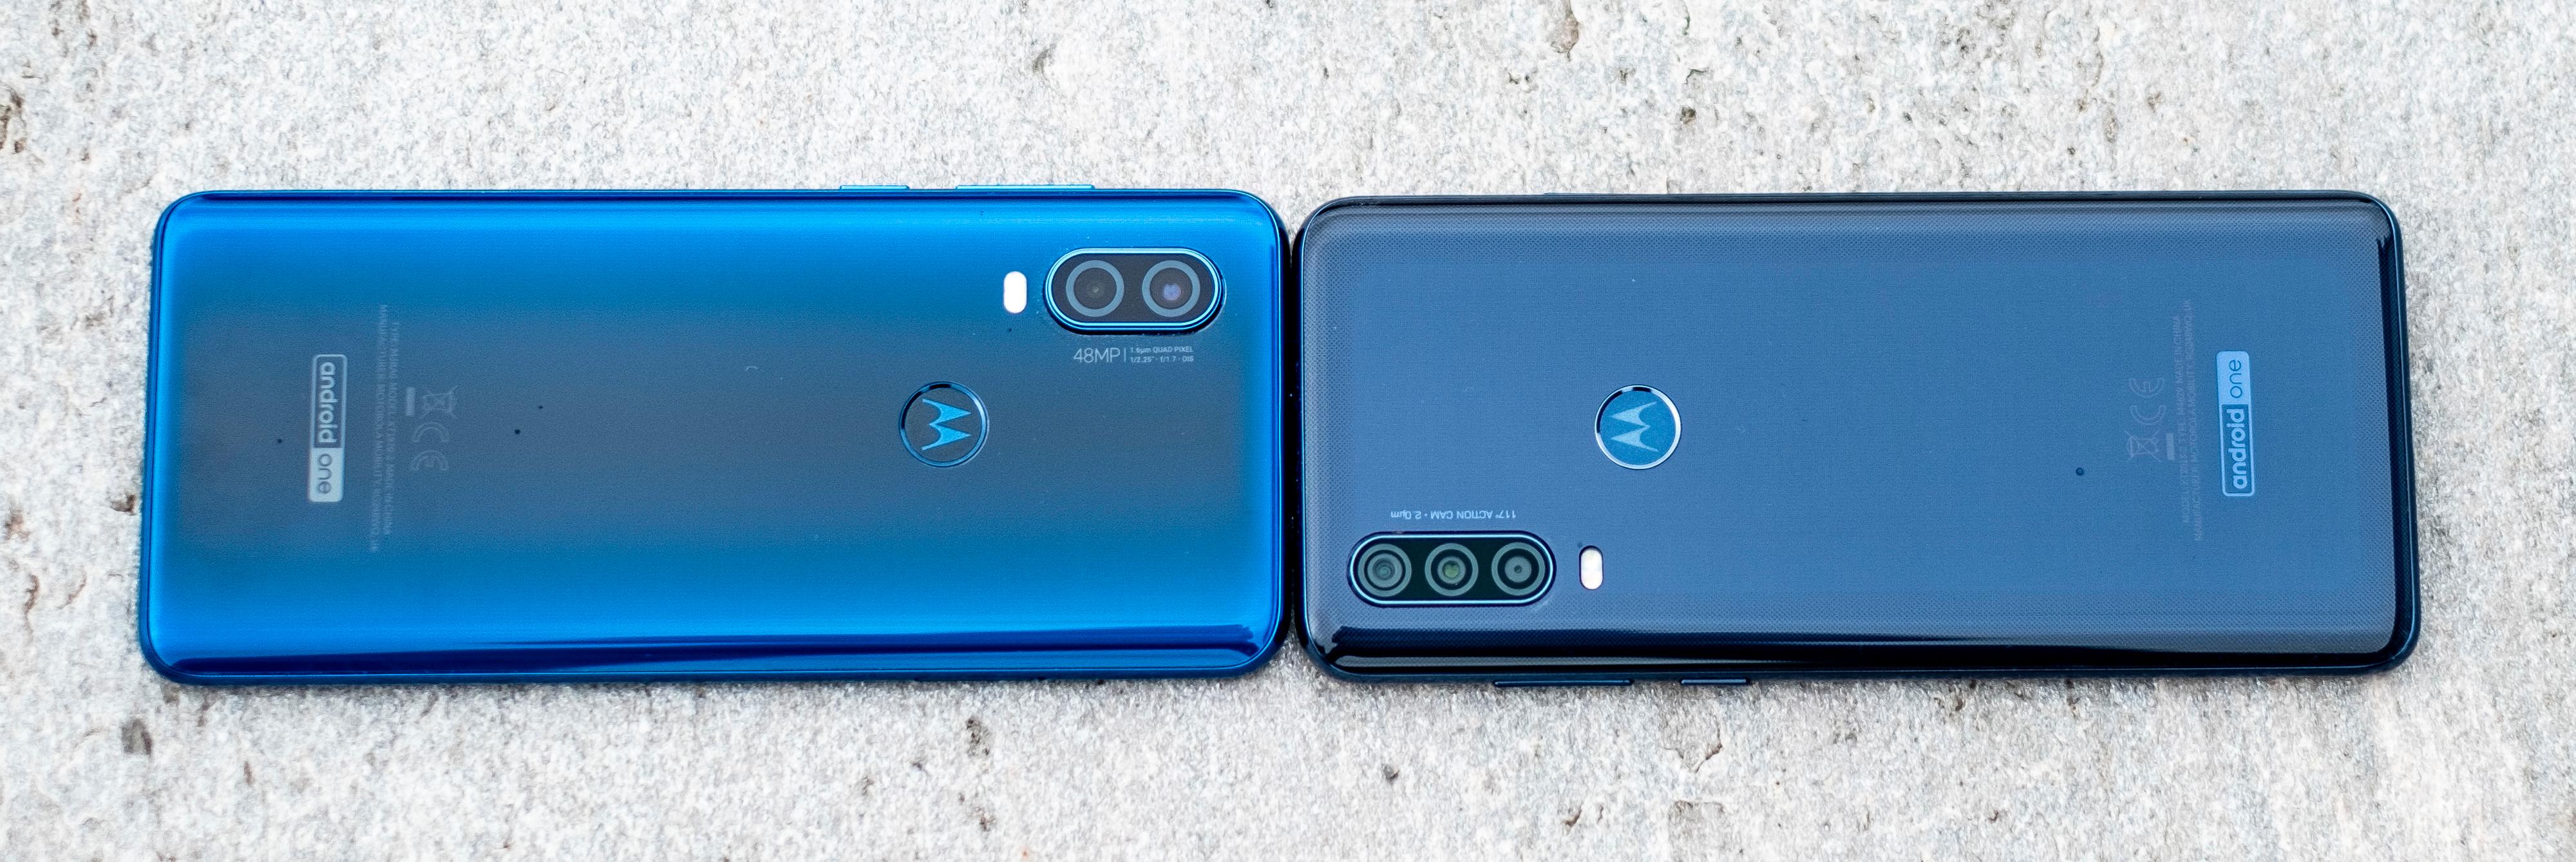 One Vision til venstre har graderte farger på baksiden og kommer i blått og kobber, mens One Action har en nærmest karbonfiberaktig blågrå farge under glasset. Den finnes også i en litt mer konservativ enkel hvit utførelse. Utover fargene er kamerahumpene øverst på telefonene den eneste måten du kan se forskjell.